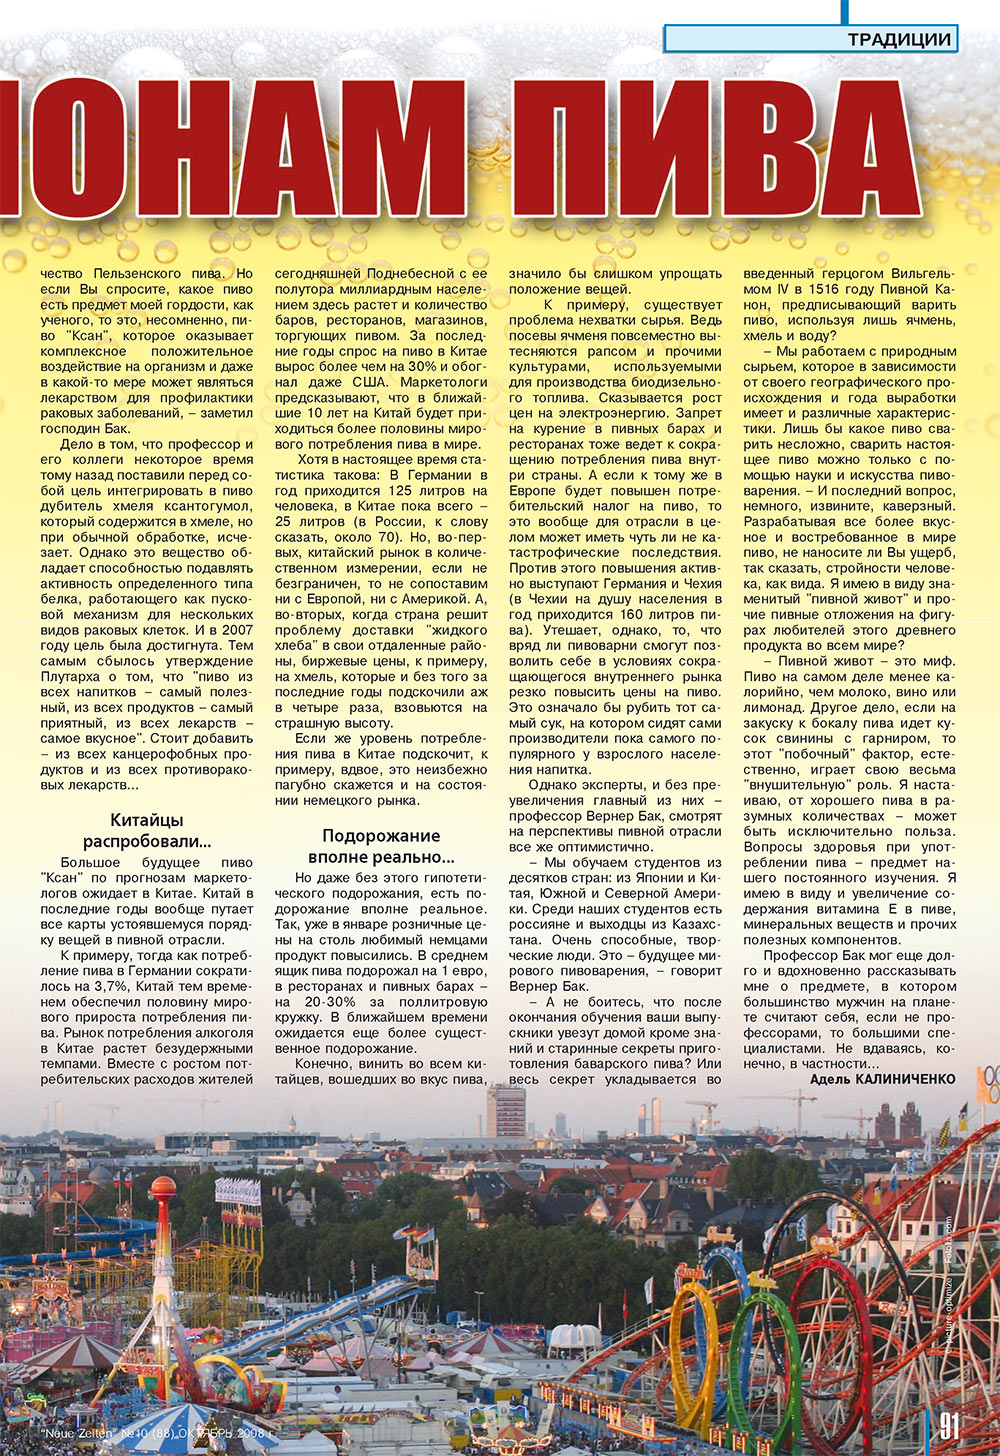 Neue Zeiten (Zeitschrift). 2008 Jahr, Ausgabe 10, Seite 91